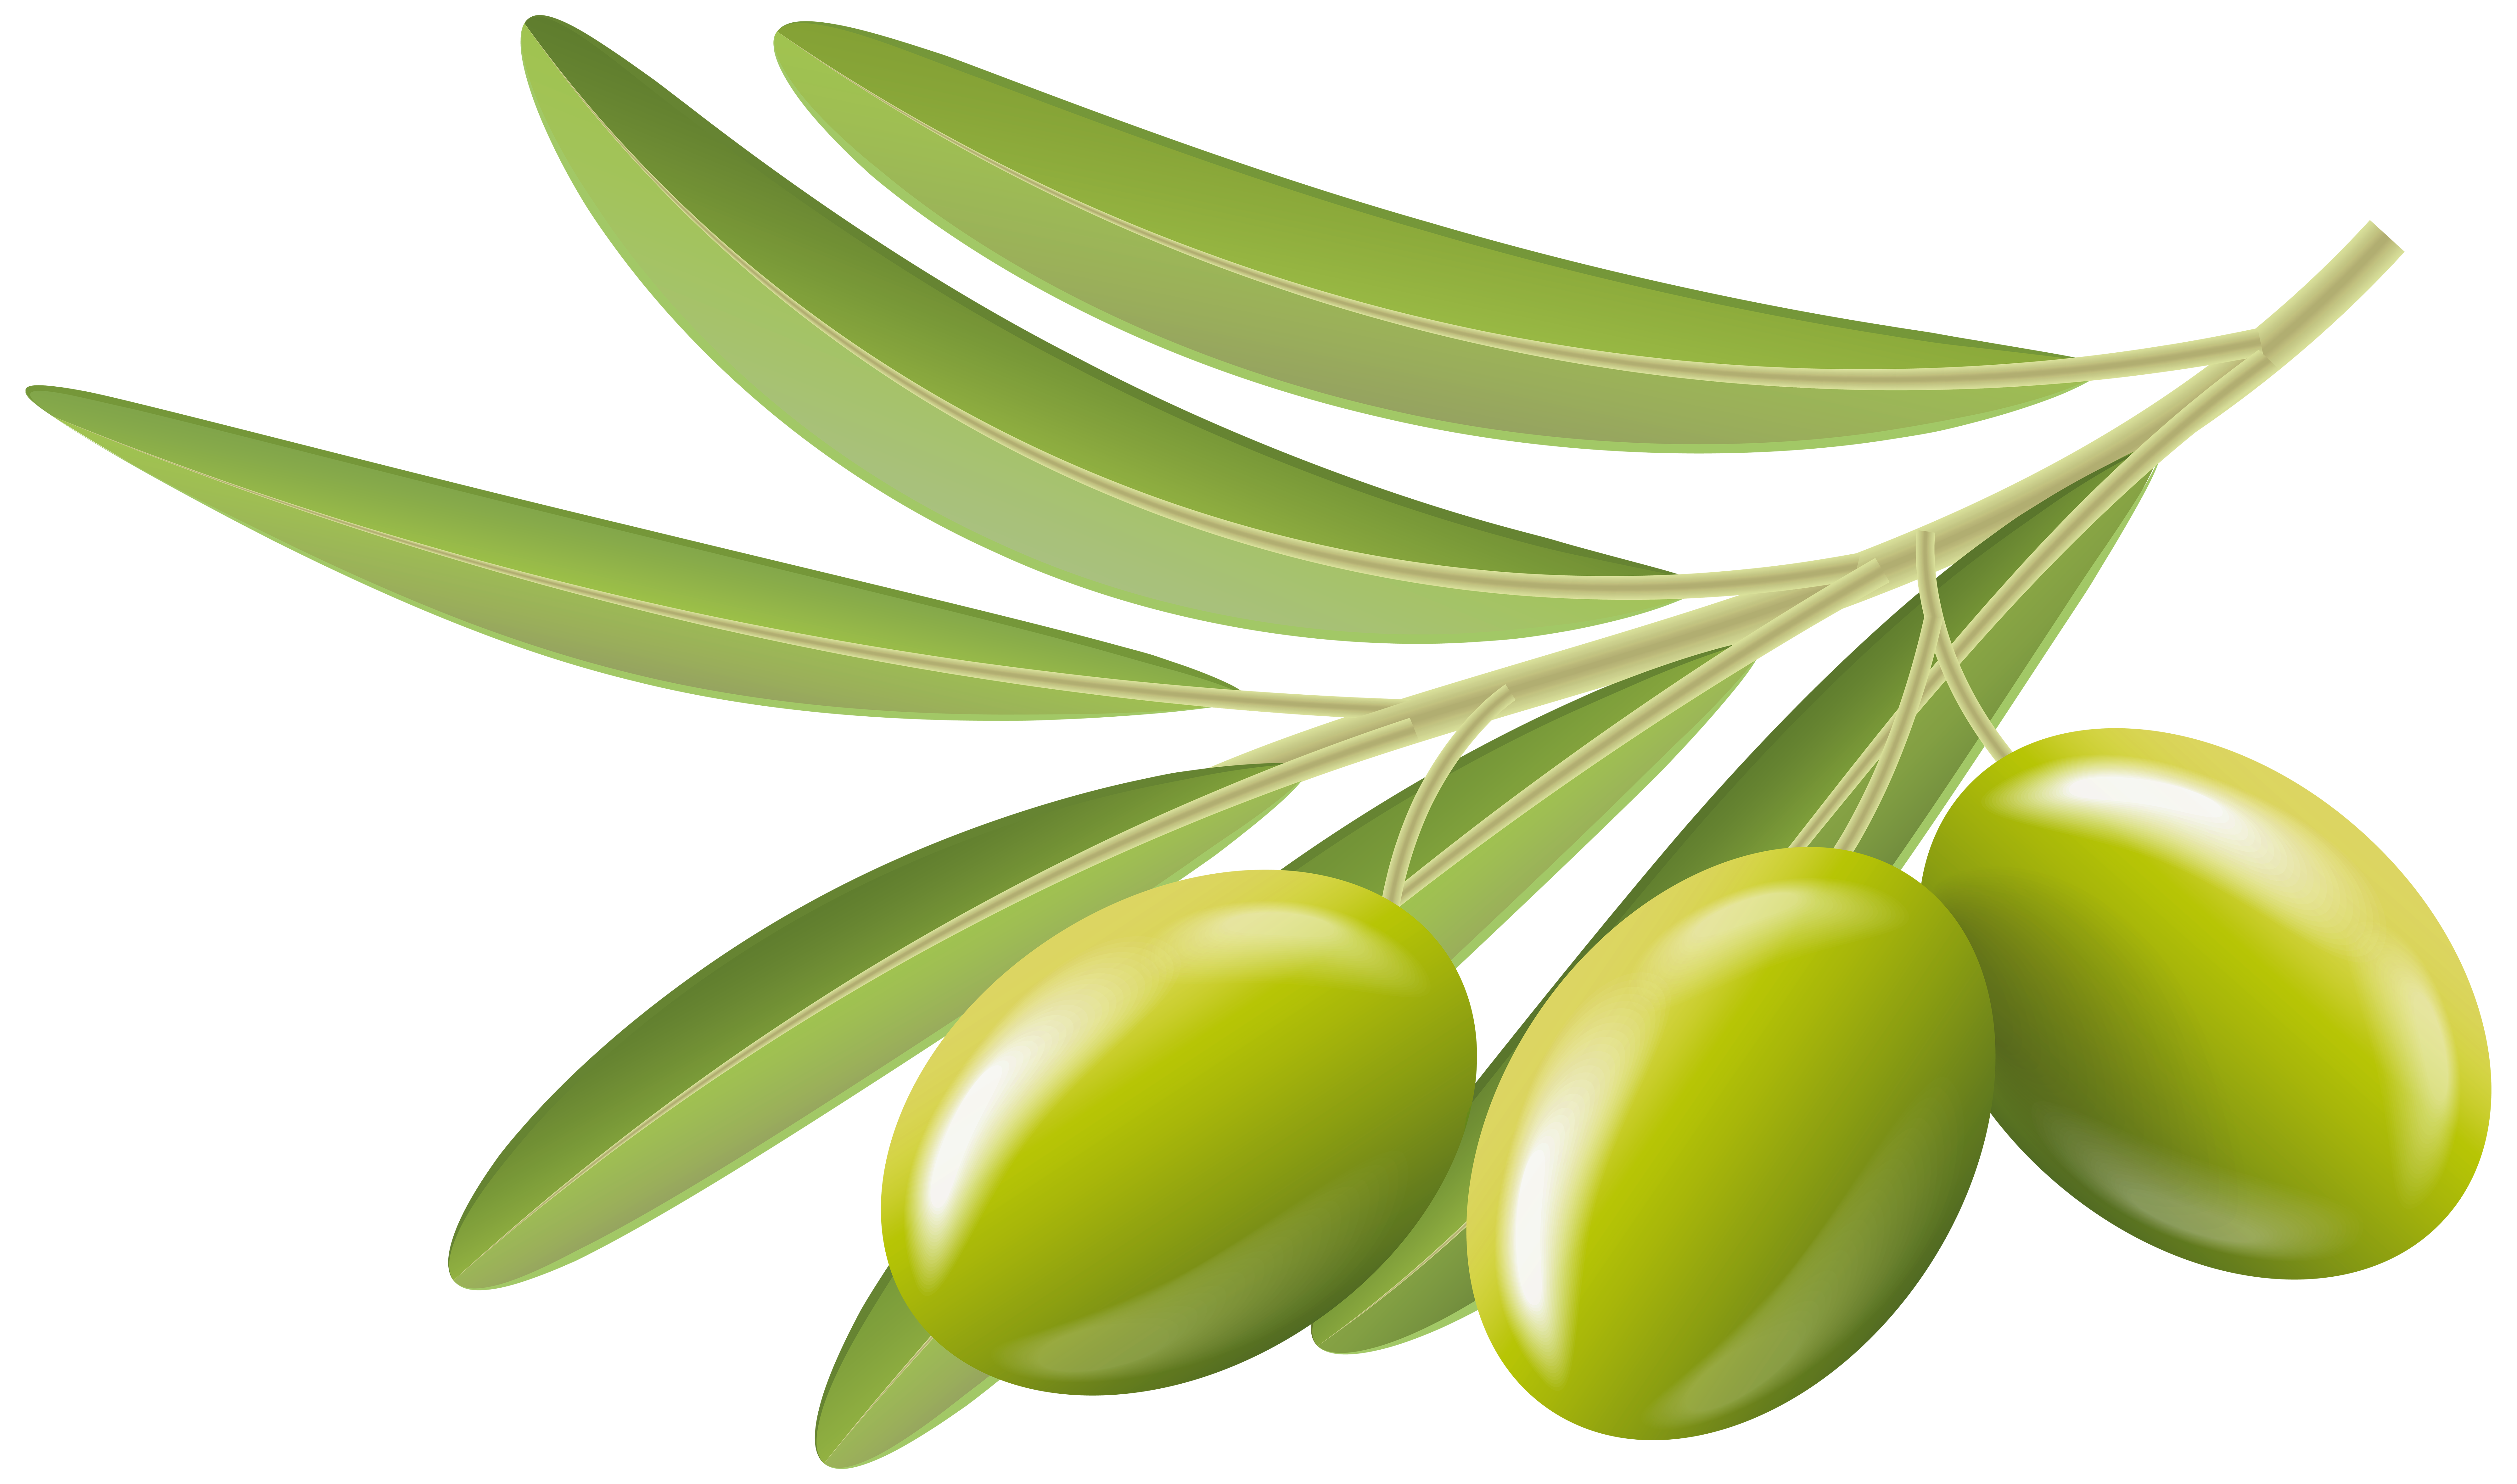 Green Olives Transparent Clip Art Image.